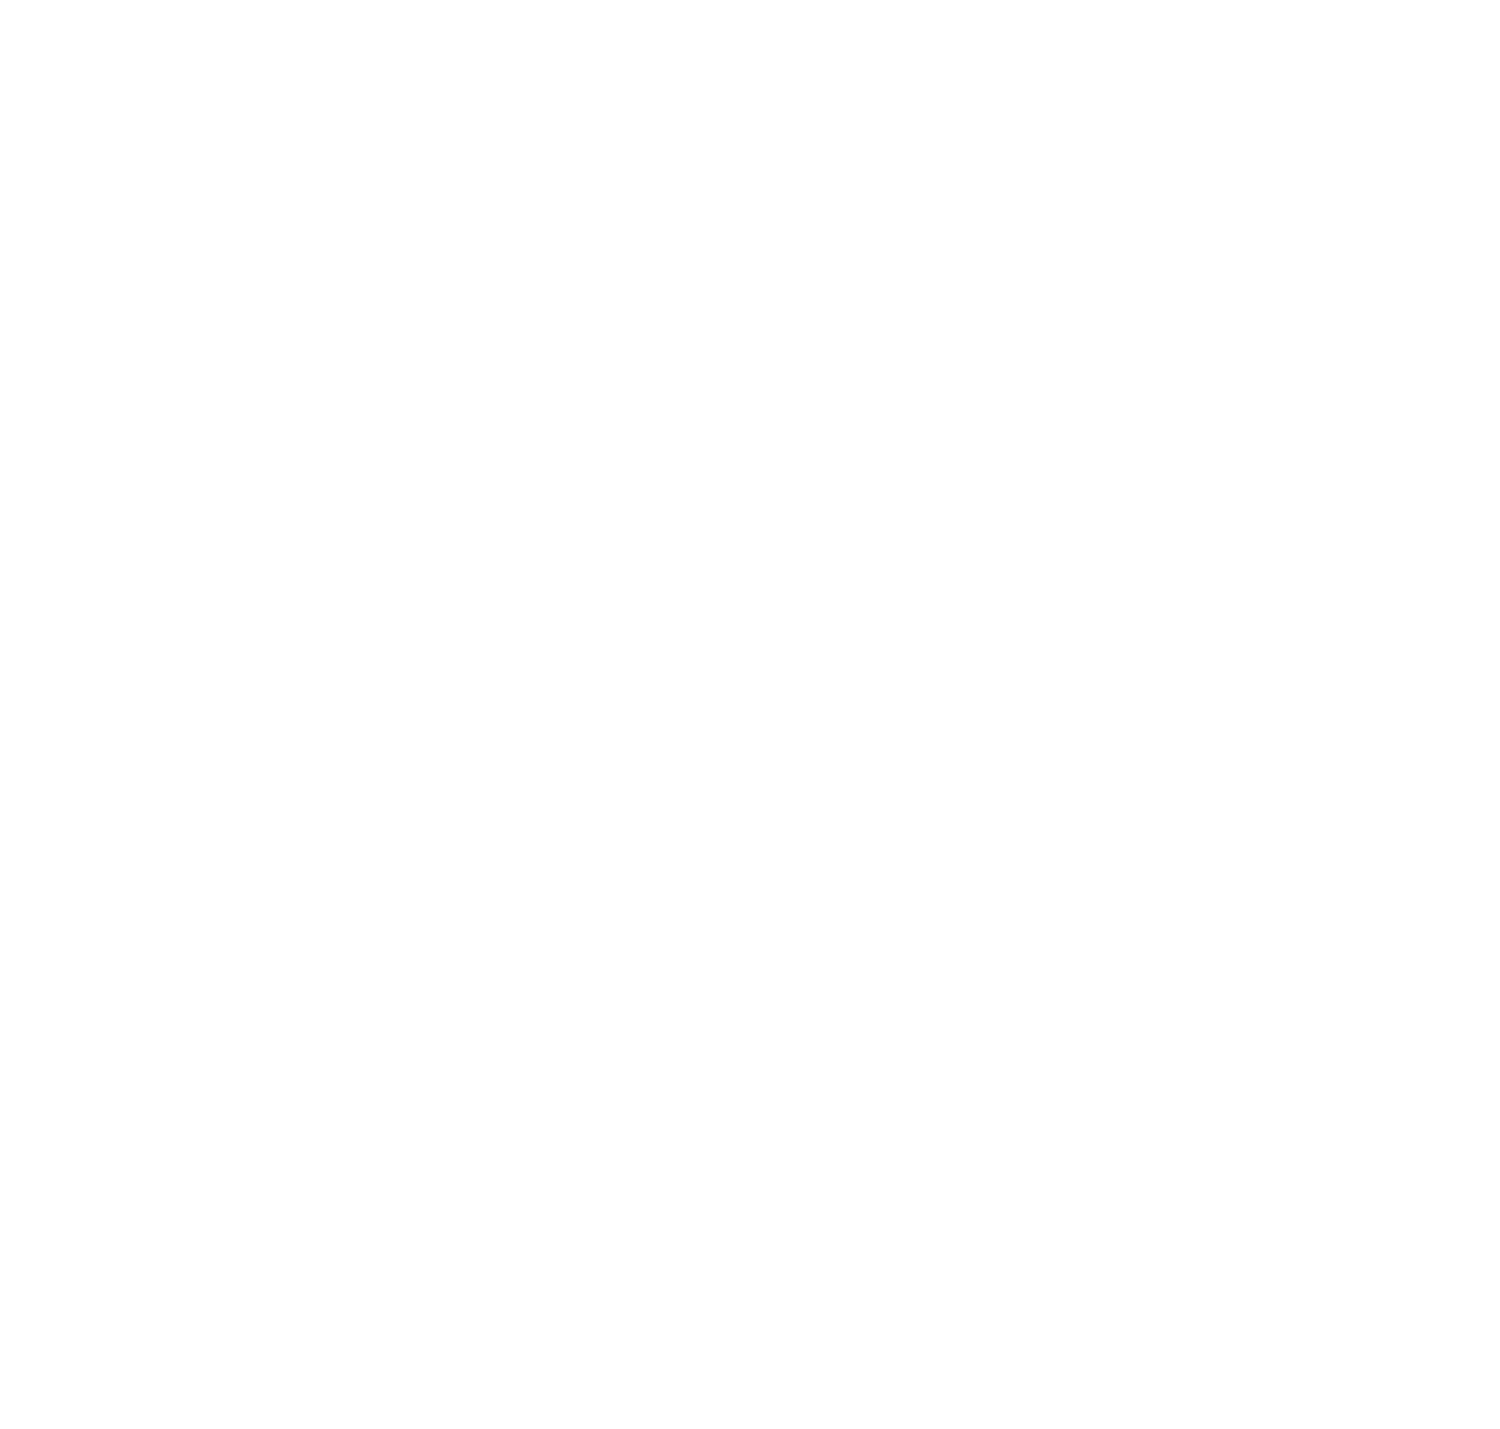 Sarah Michals Photography + Design